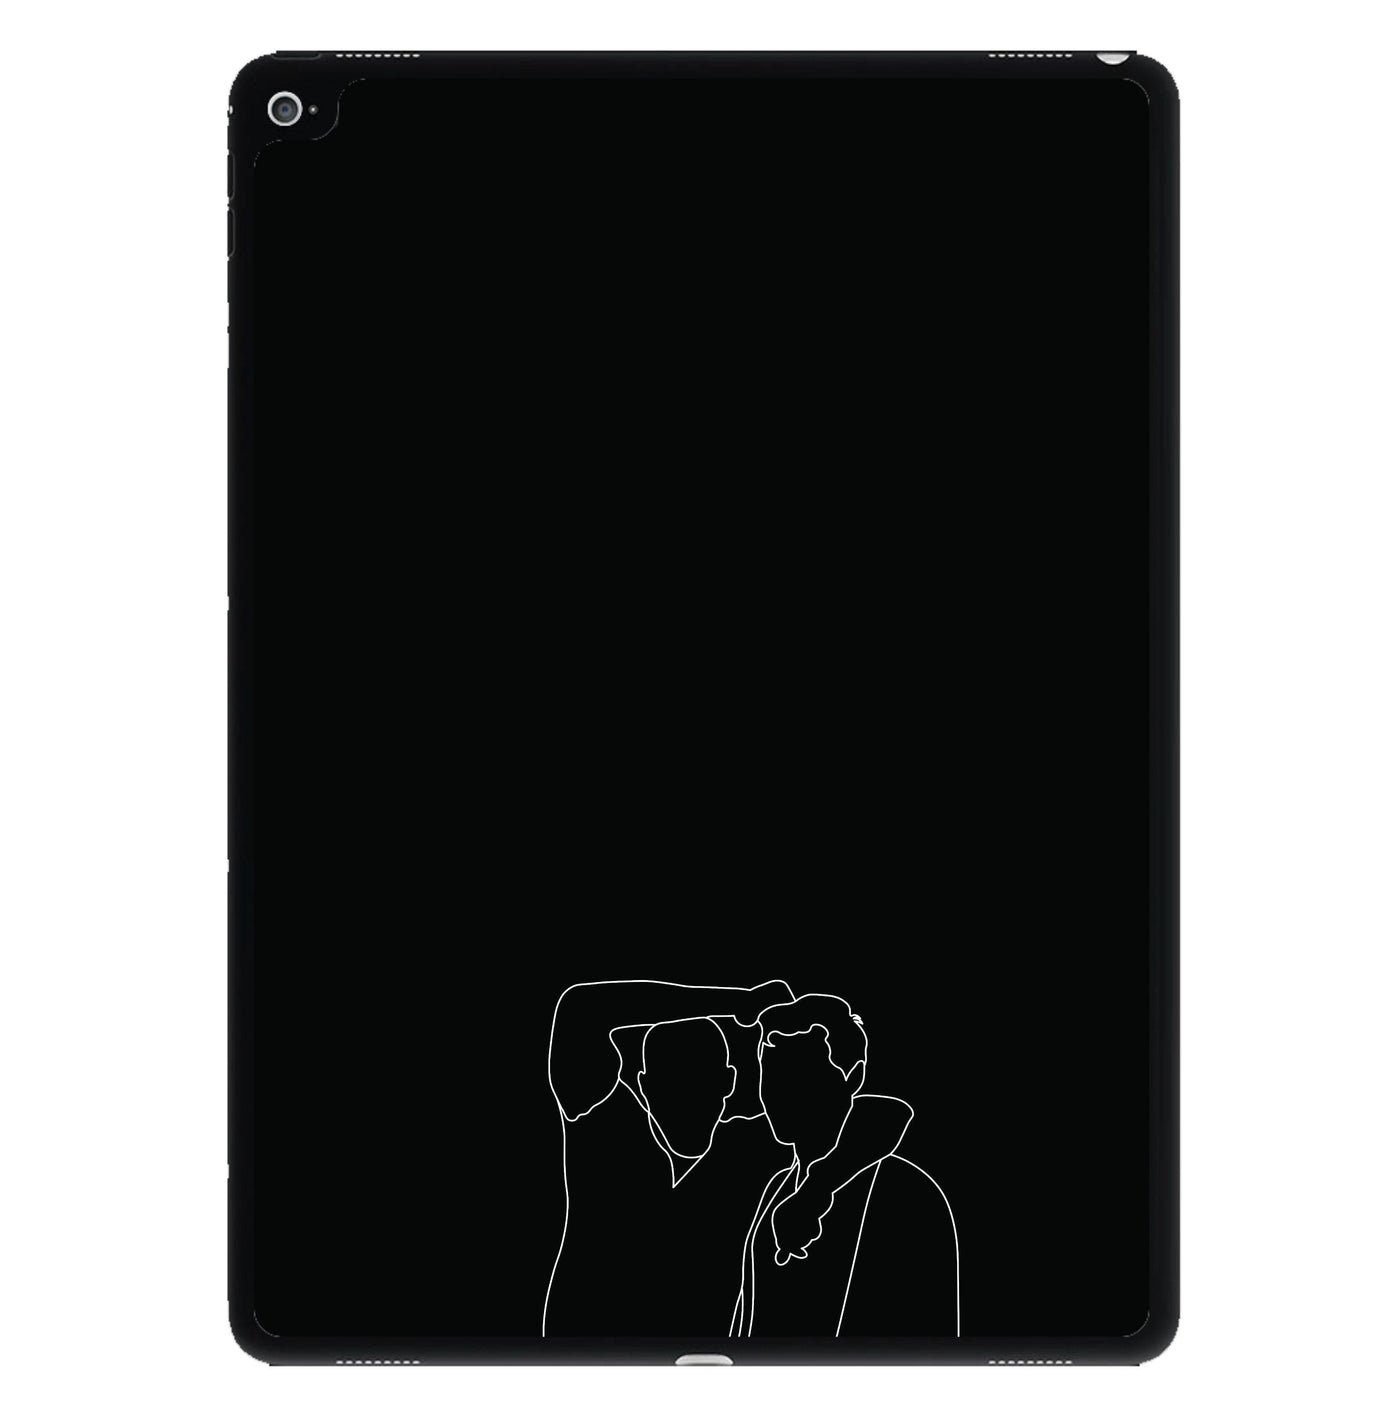 Brother - The Originals iPad Case